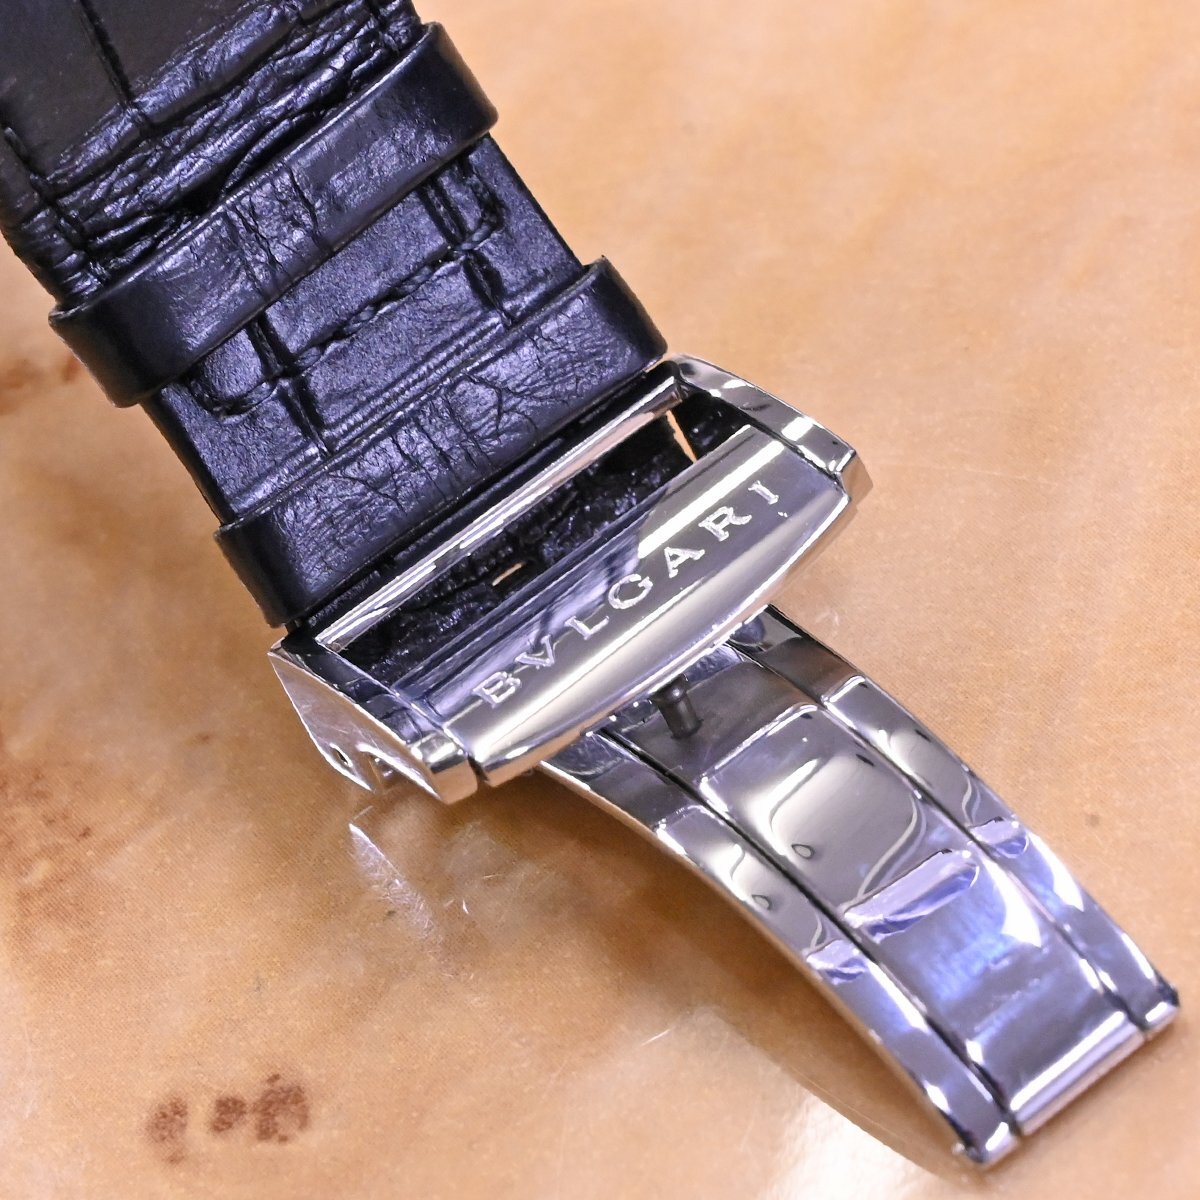  подлинный товар первоклассный товар BVLGARY L plimero Okt verotisimo хронограф мужской часы мужской самозаводящиеся часы наручные часы сохранение коробка с гарантией BVLGARI